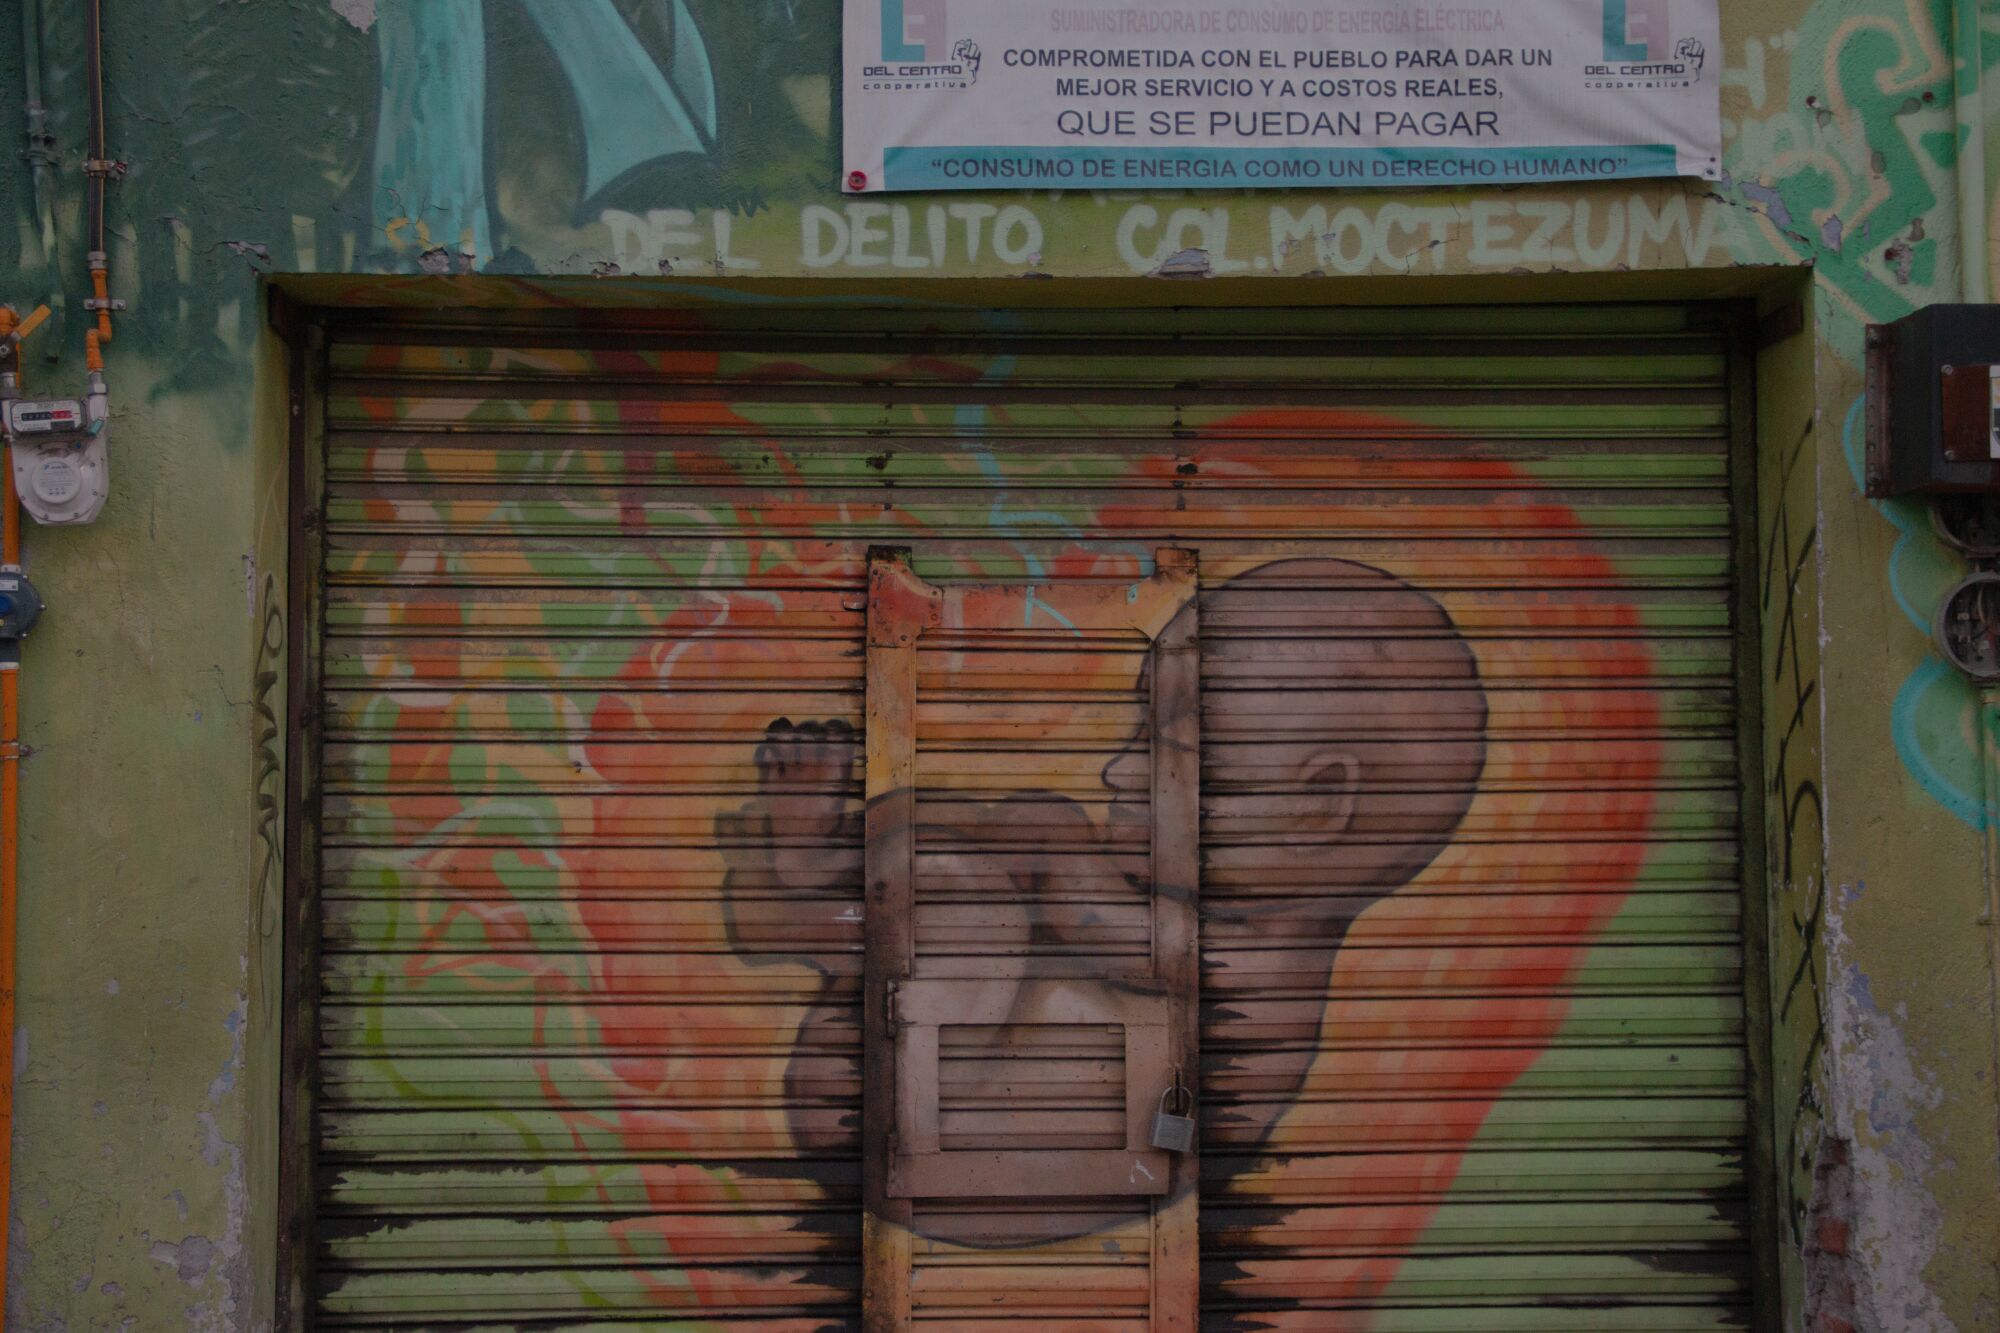 Graffiti in Mexico City shows a fetus in utero.